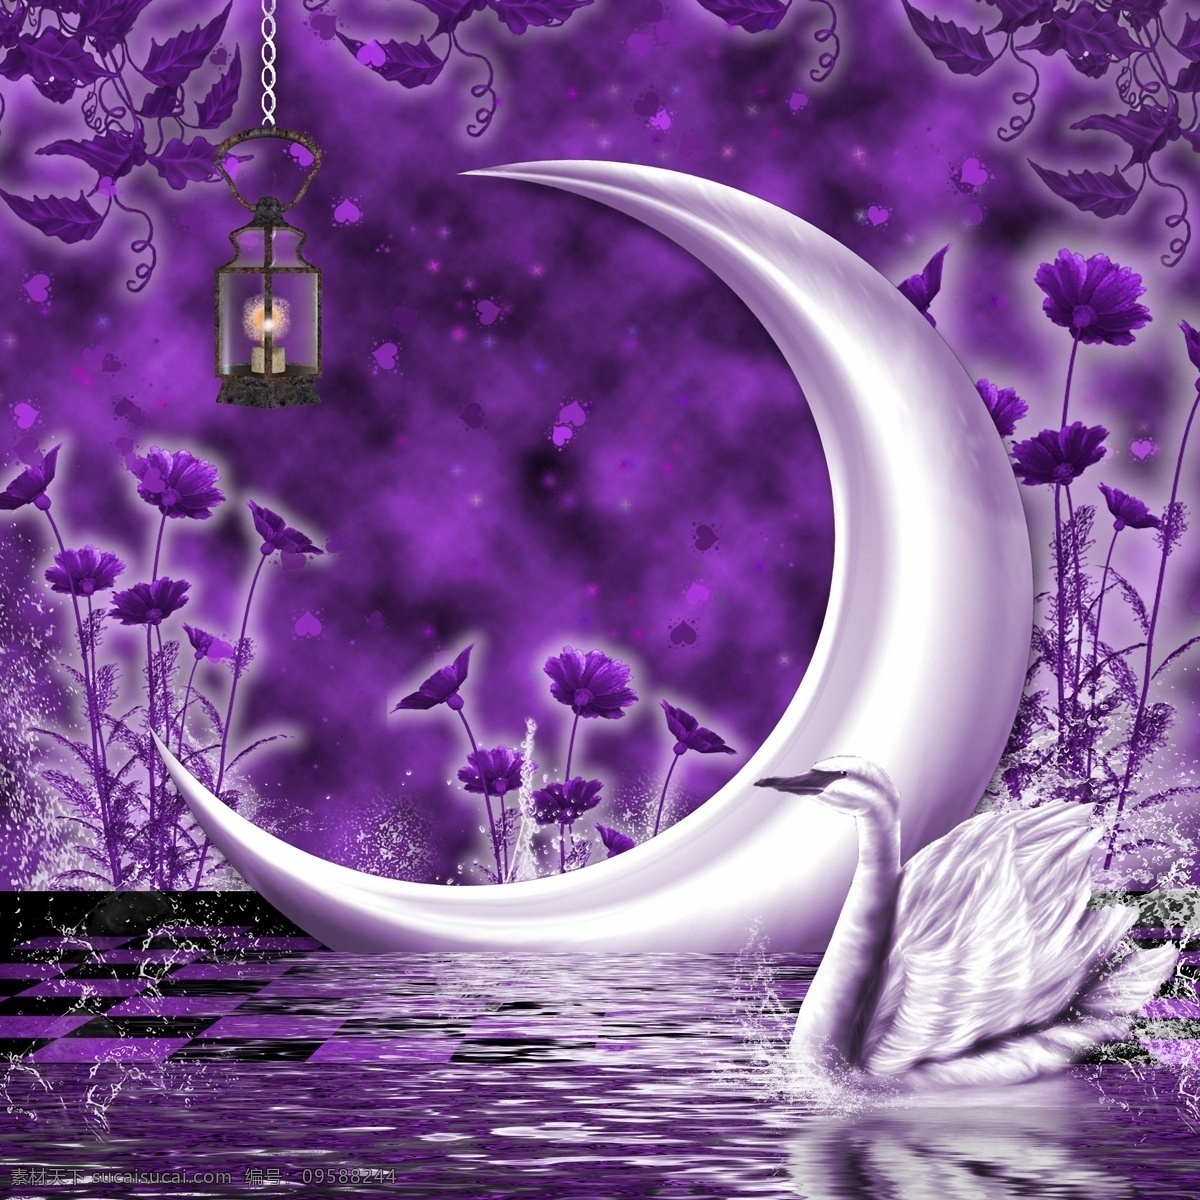 紫色 梦幻 动画 背景 紫色梦幻 动画背景 漫画背景 天鹅 月亮 紫色花纹背景 山水风景 风景图片